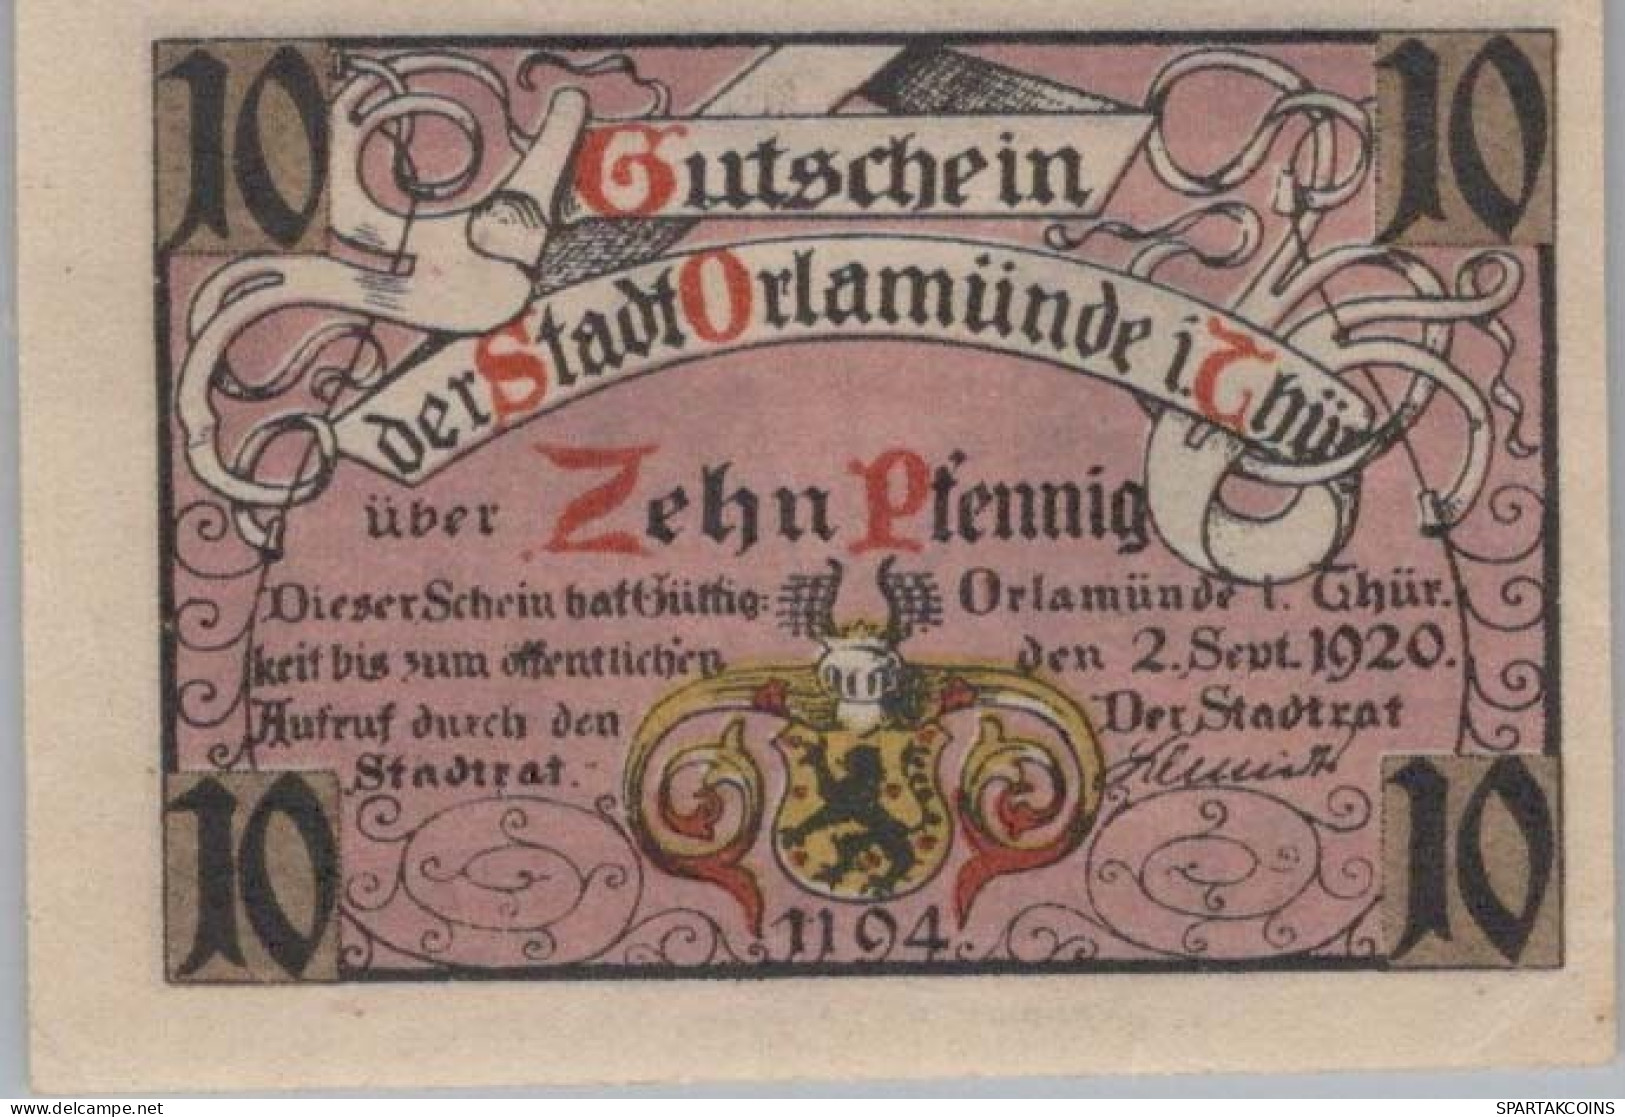 10 PFENNIG 1919 Stadt ORLAMÜNDE Thuringia UNC DEUTSCHLAND Notgeld #PH197 - [11] Lokale Uitgaven